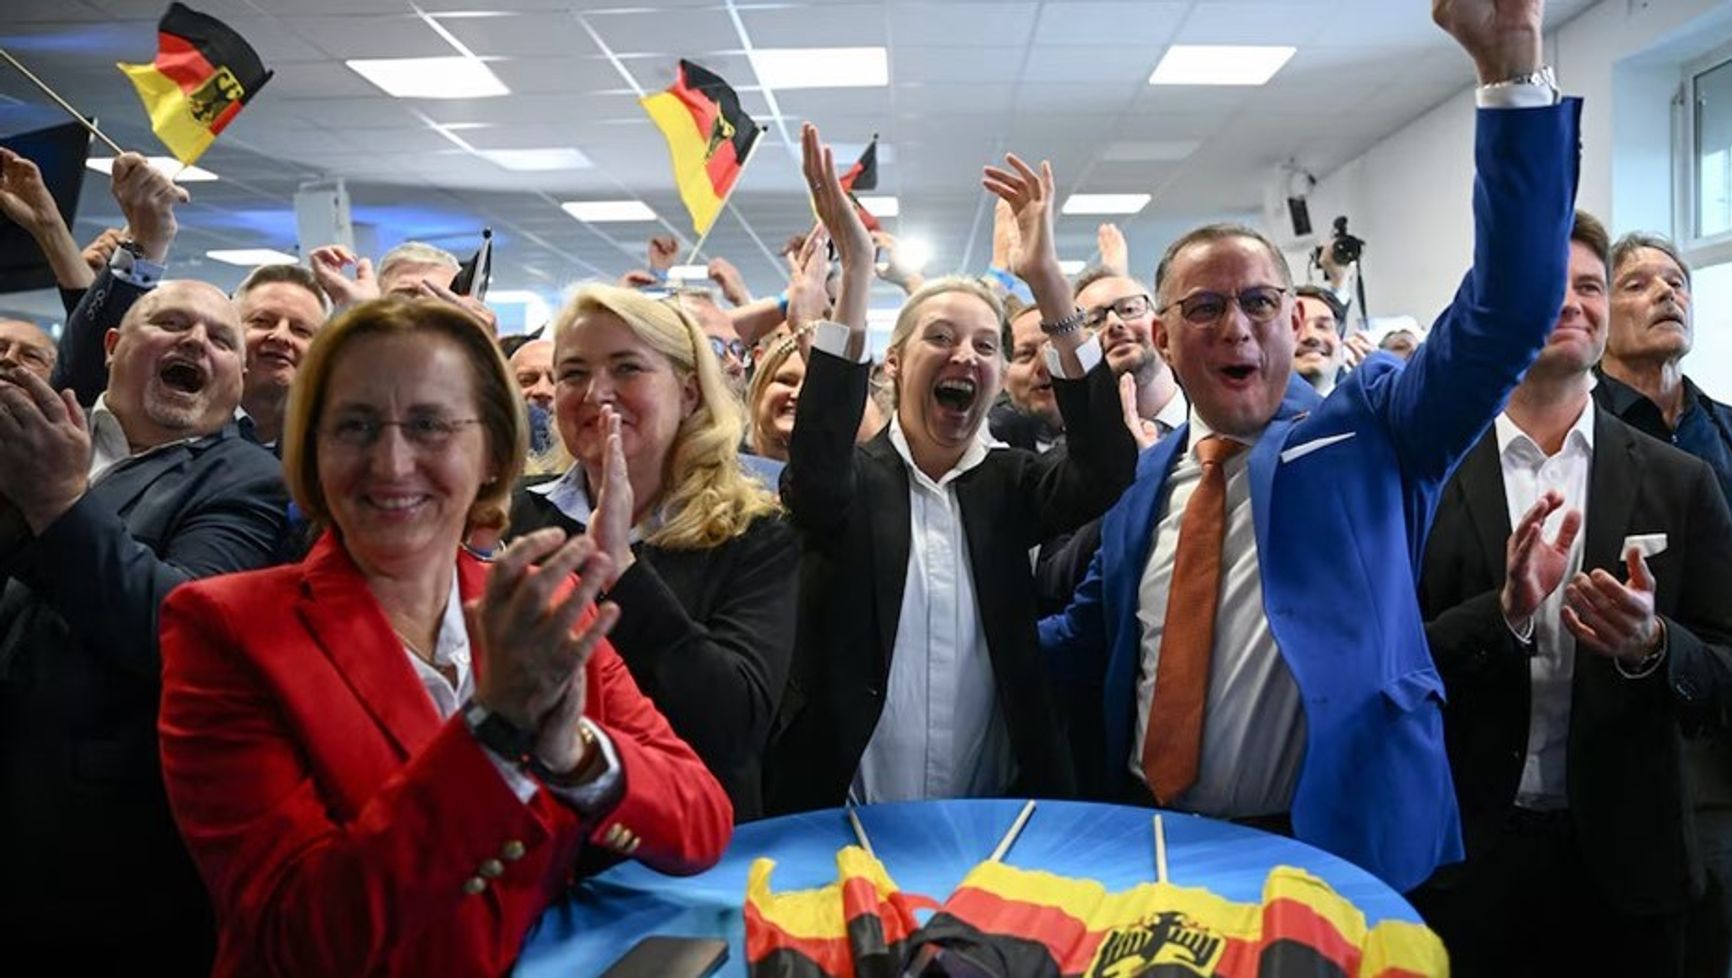 Члены партии «Альтернатива для Германии» Беатрикс фон Шторх, Алиса Вайдель и Тино Хрупалла после выборов в Европарламент 